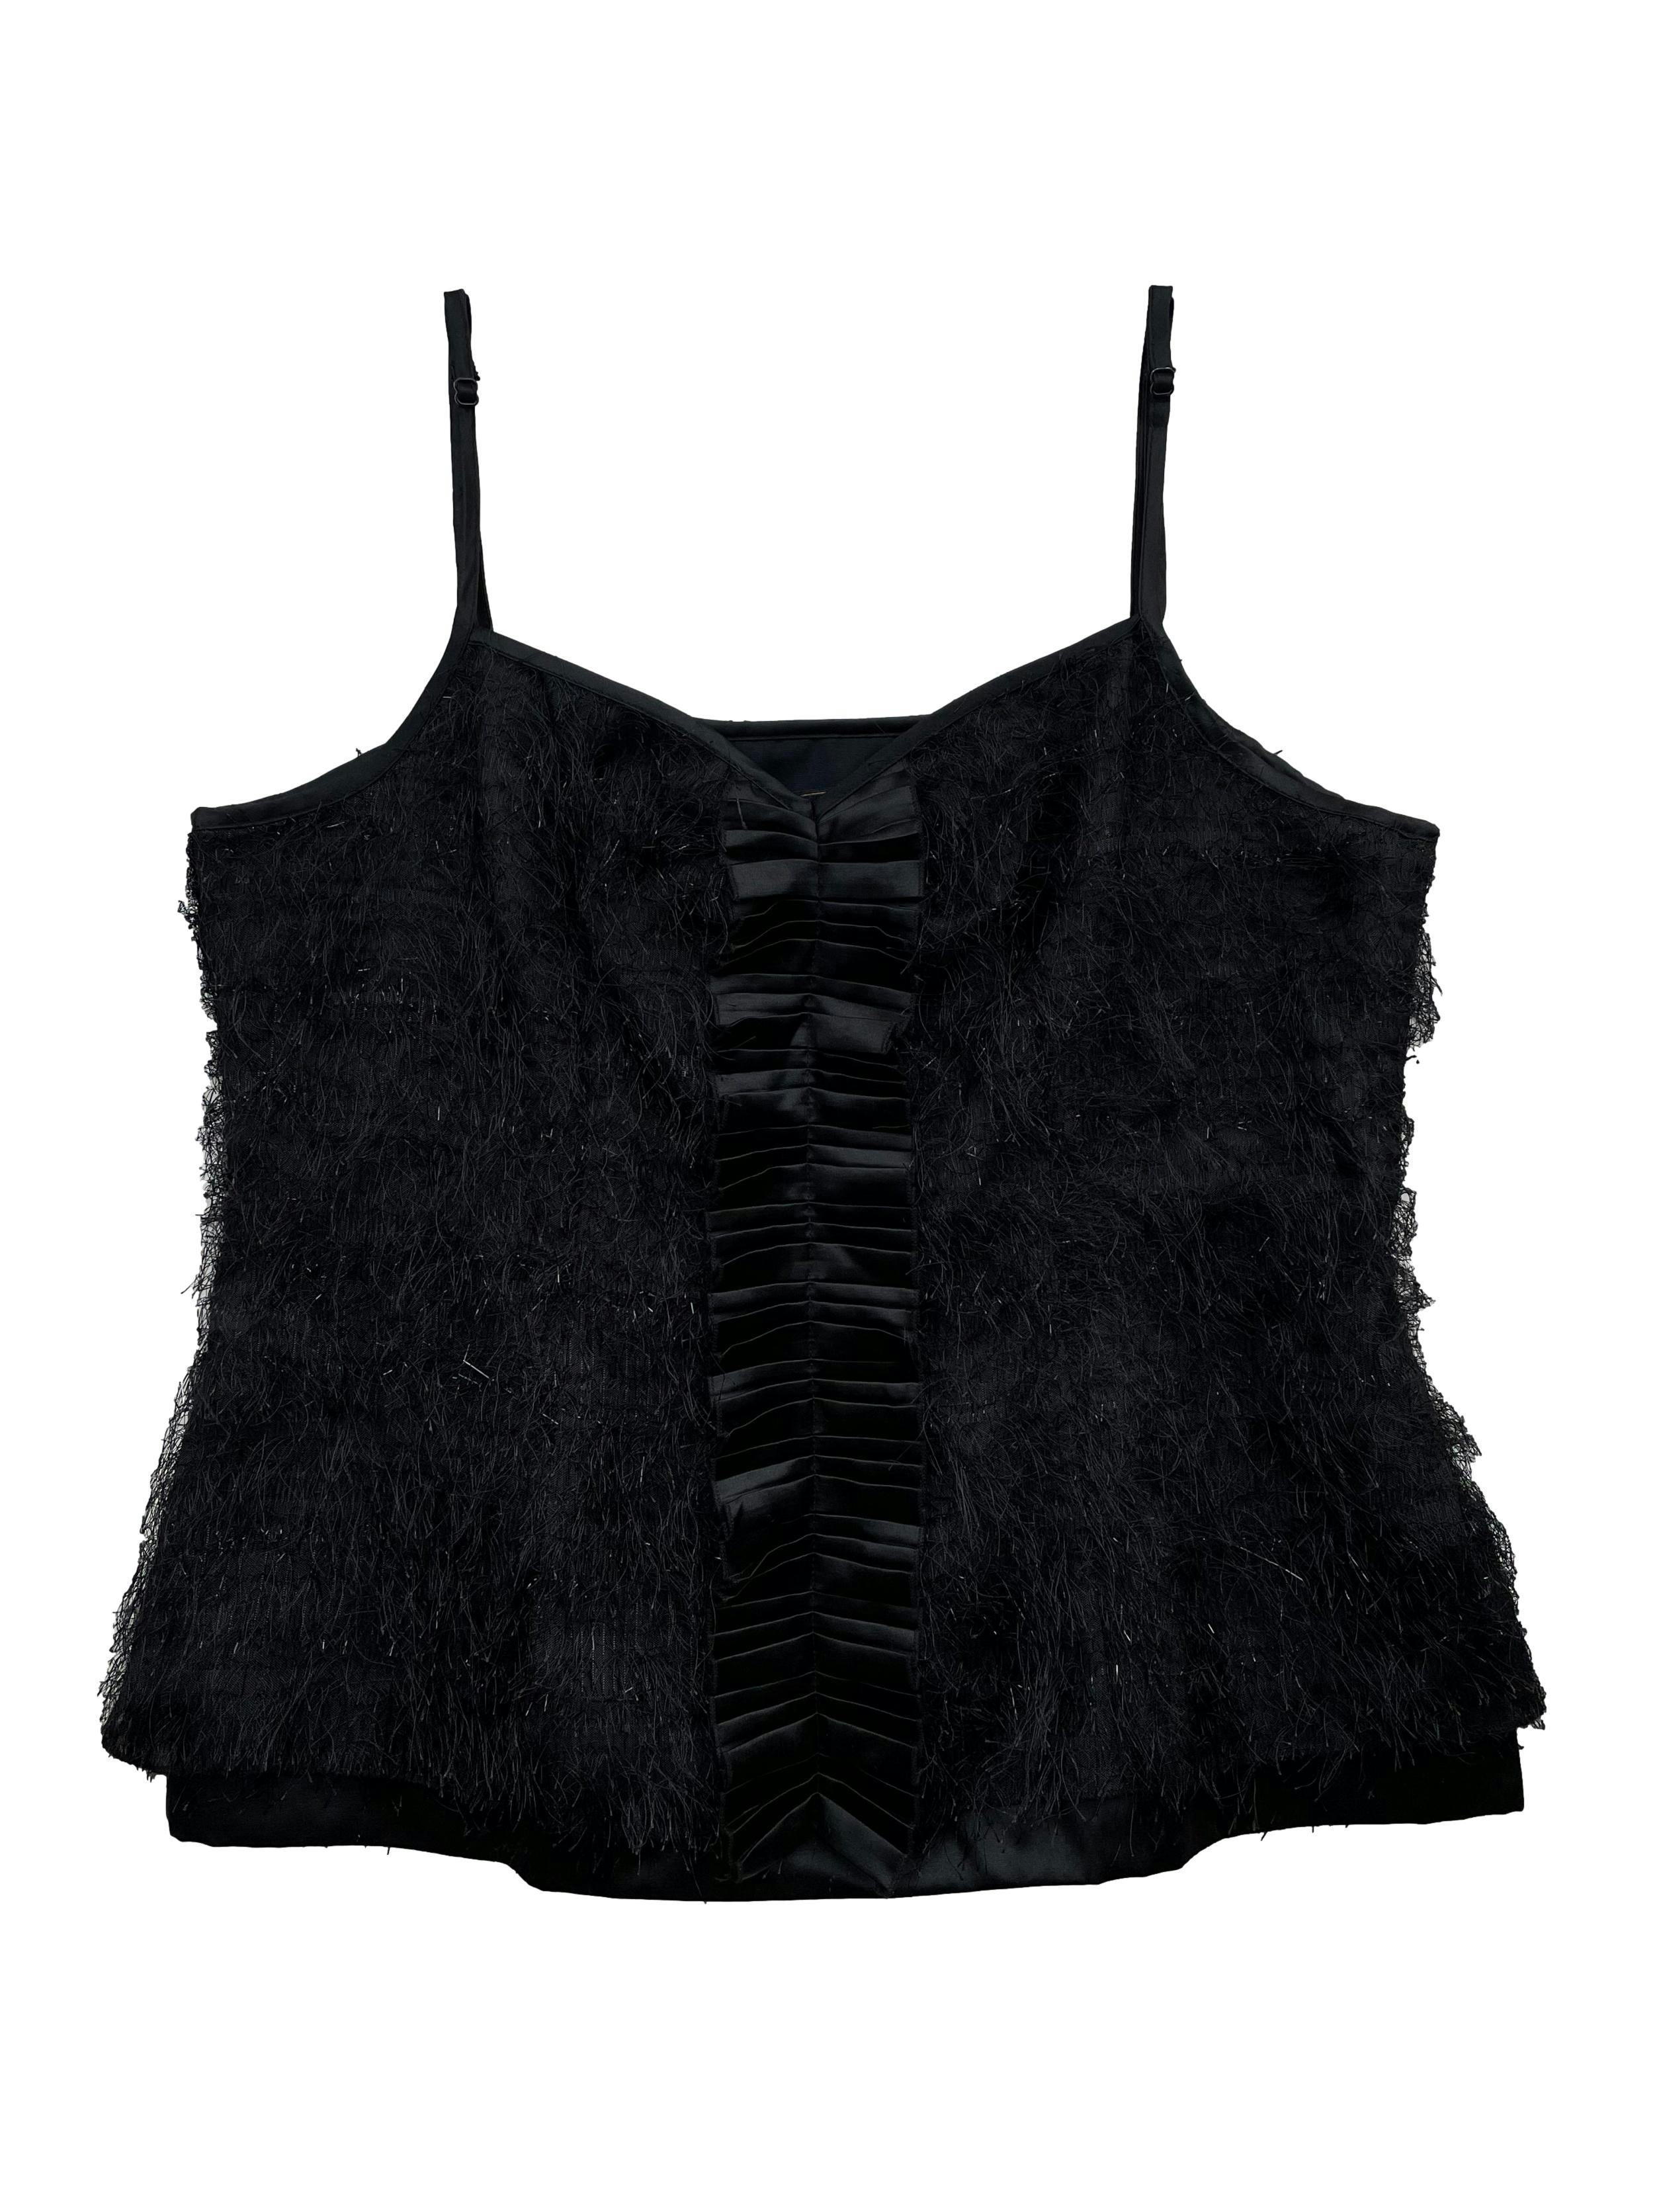 Blusa BcbgMaxazria negra, efecto pelo y base mezcla de seda y algodón, con cierre lateral. Busto 96cm Largo 52cm